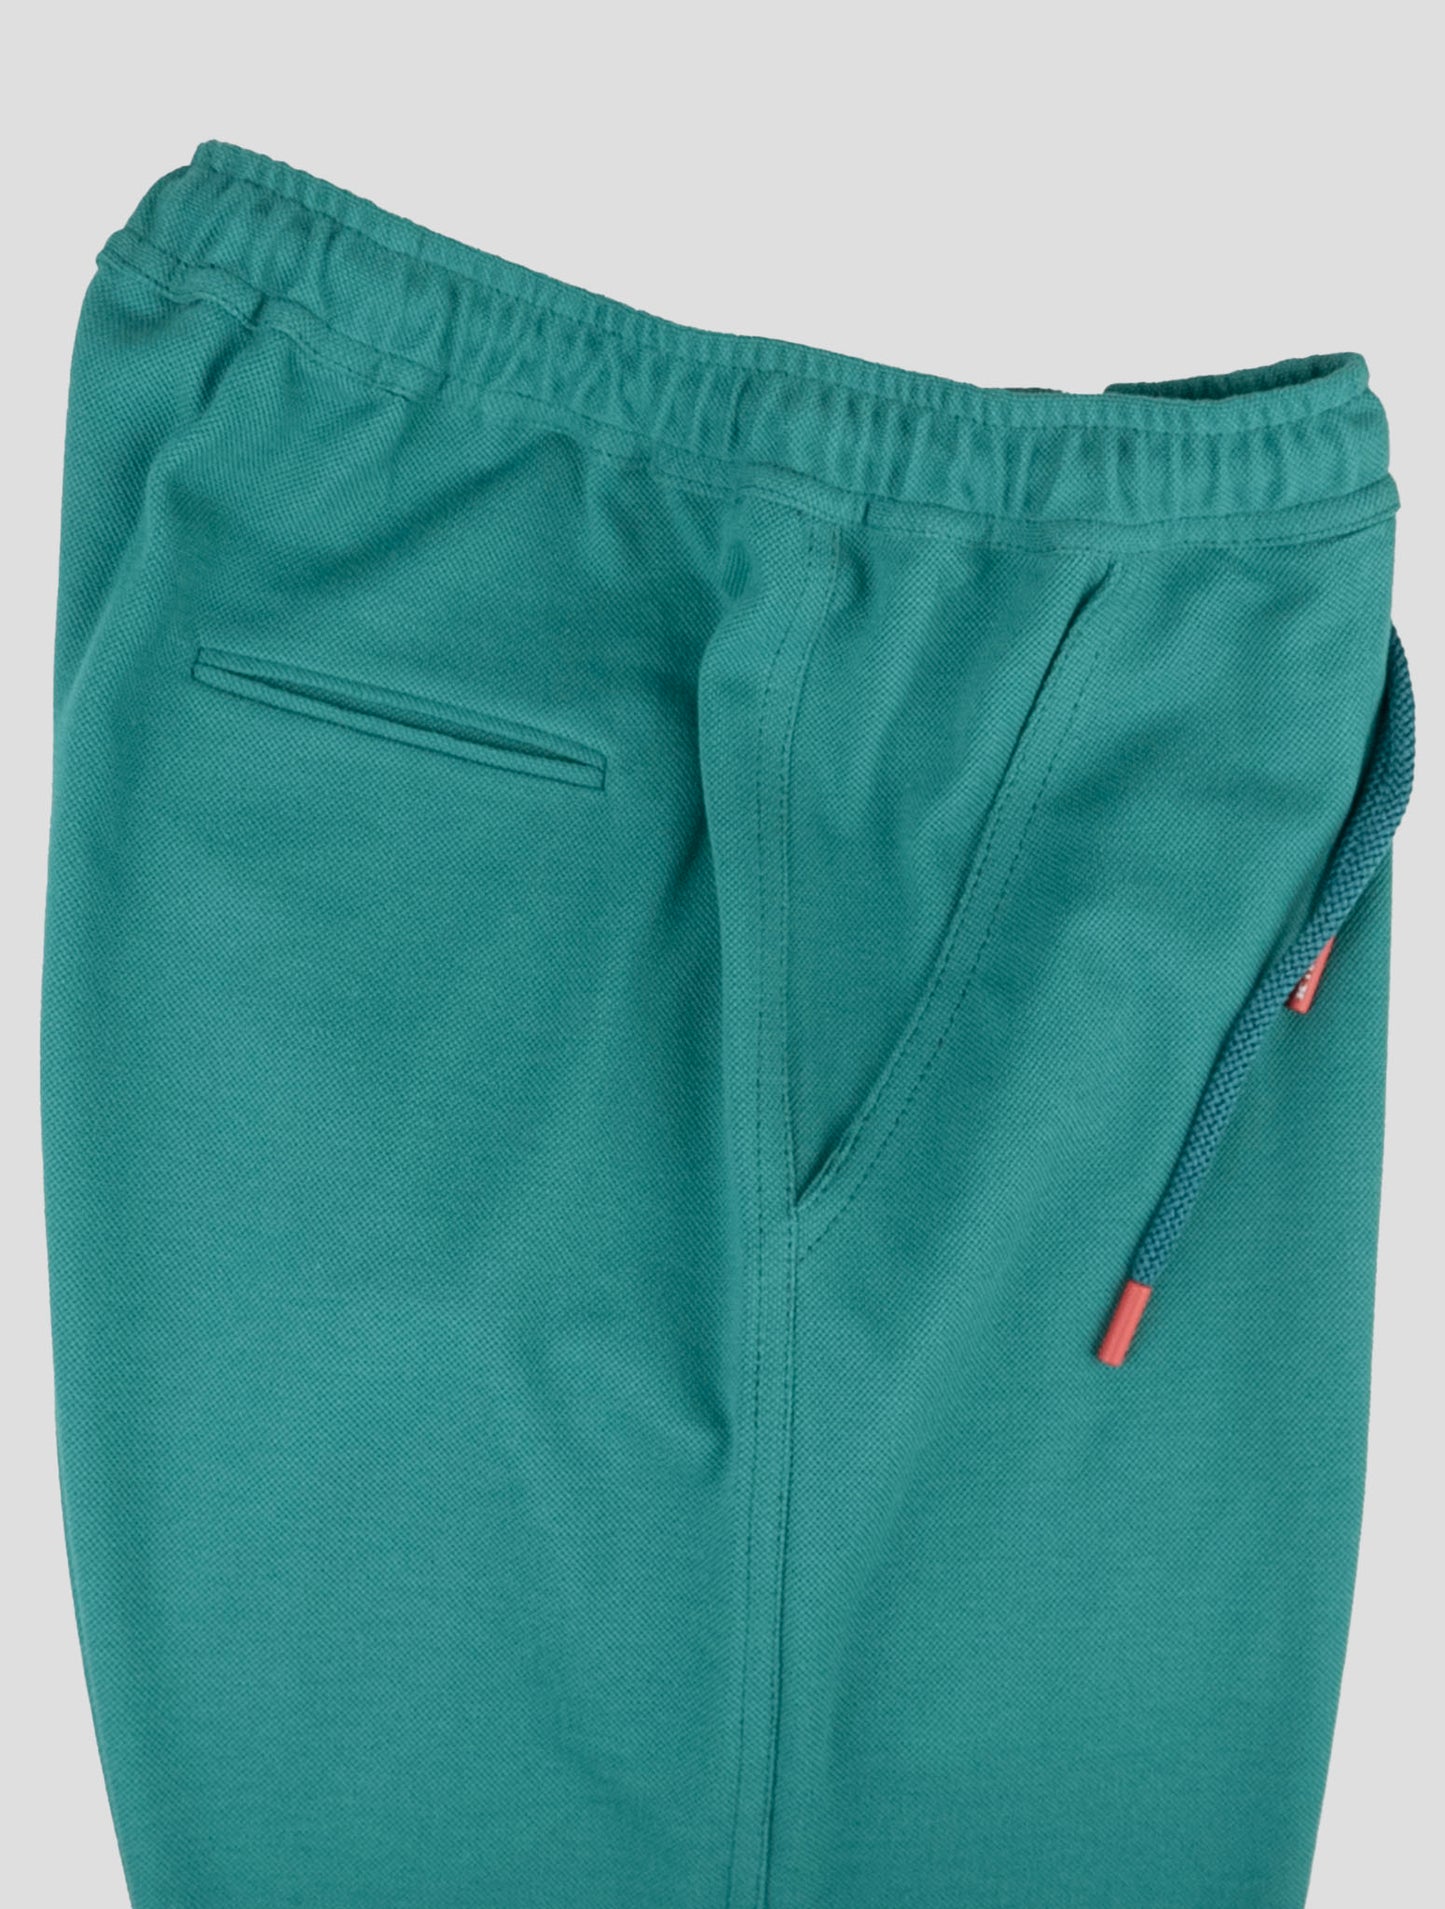 Kiton matchende outfit - grå Mariano og grønne korte bukser træningsdragt